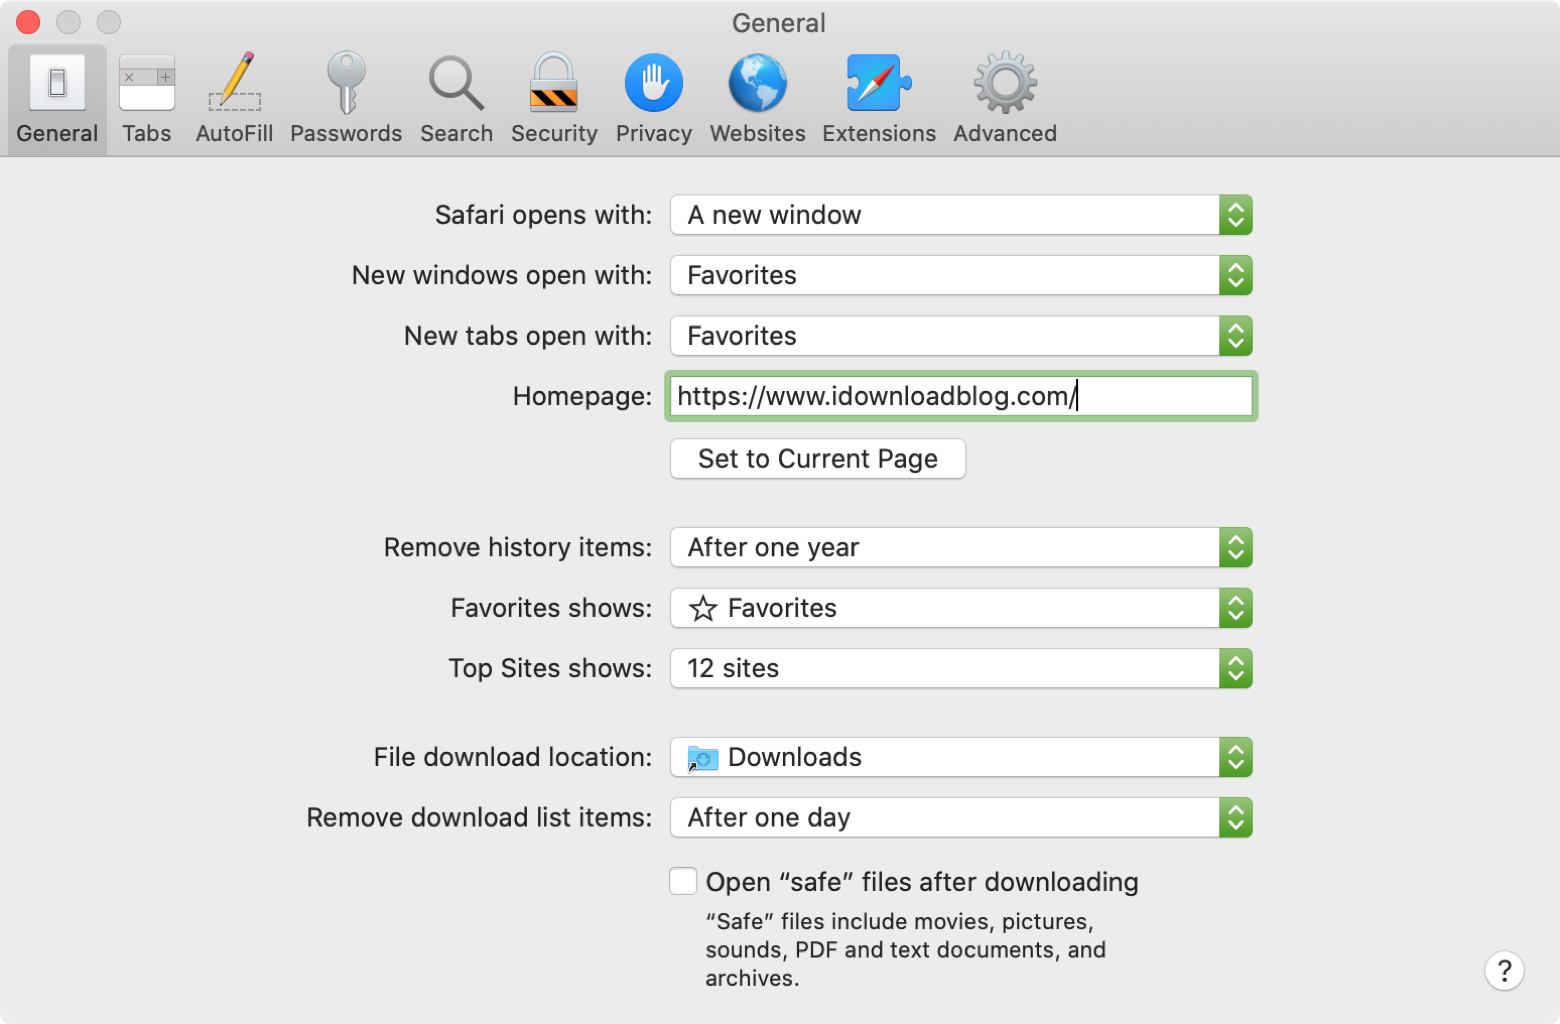 safari browser download for mac